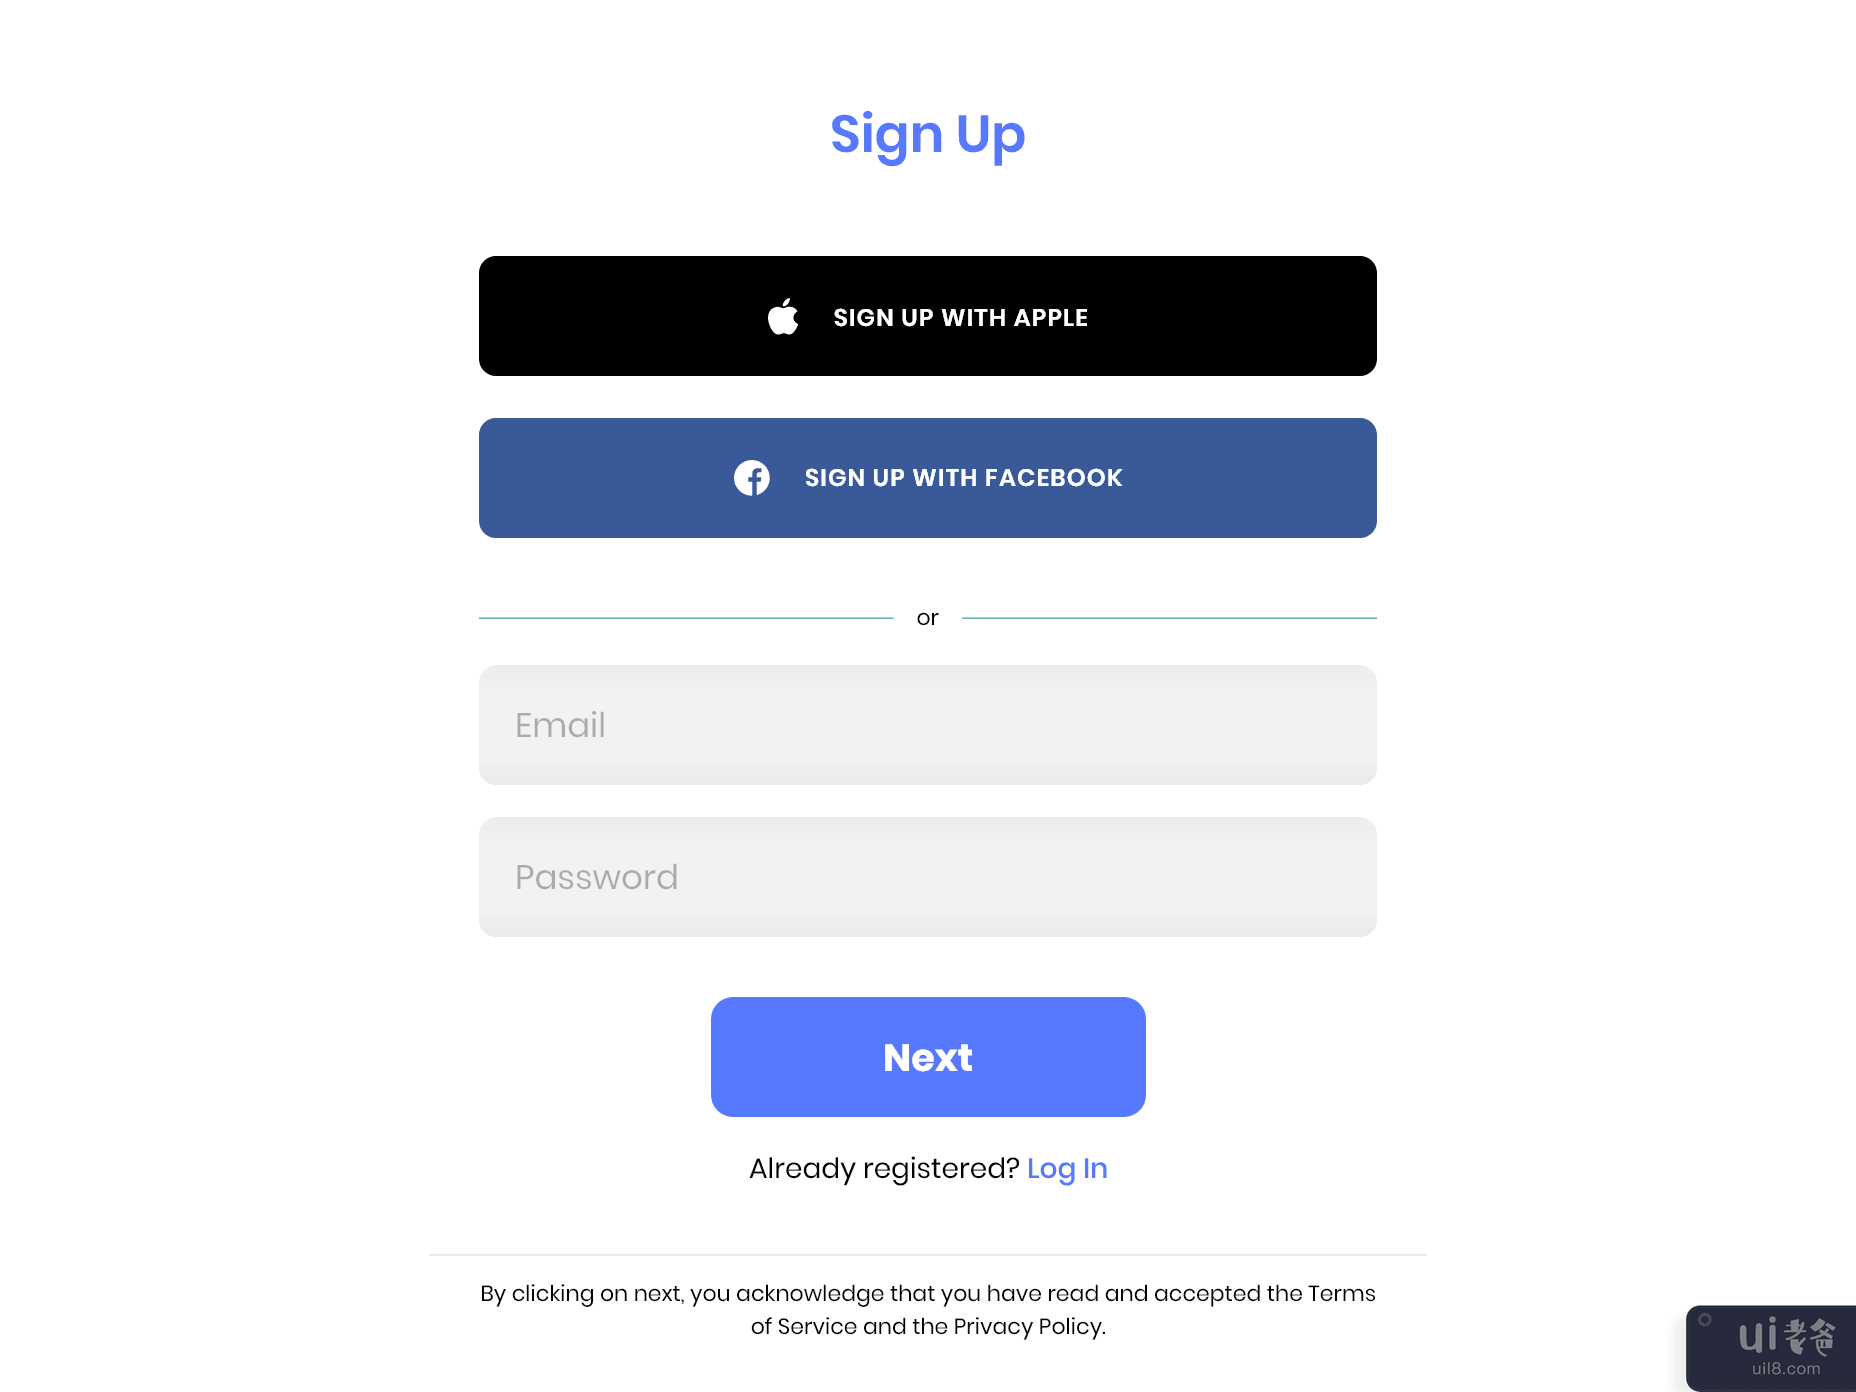 网页标志 UI 设计(Web Sign UI Design)插图